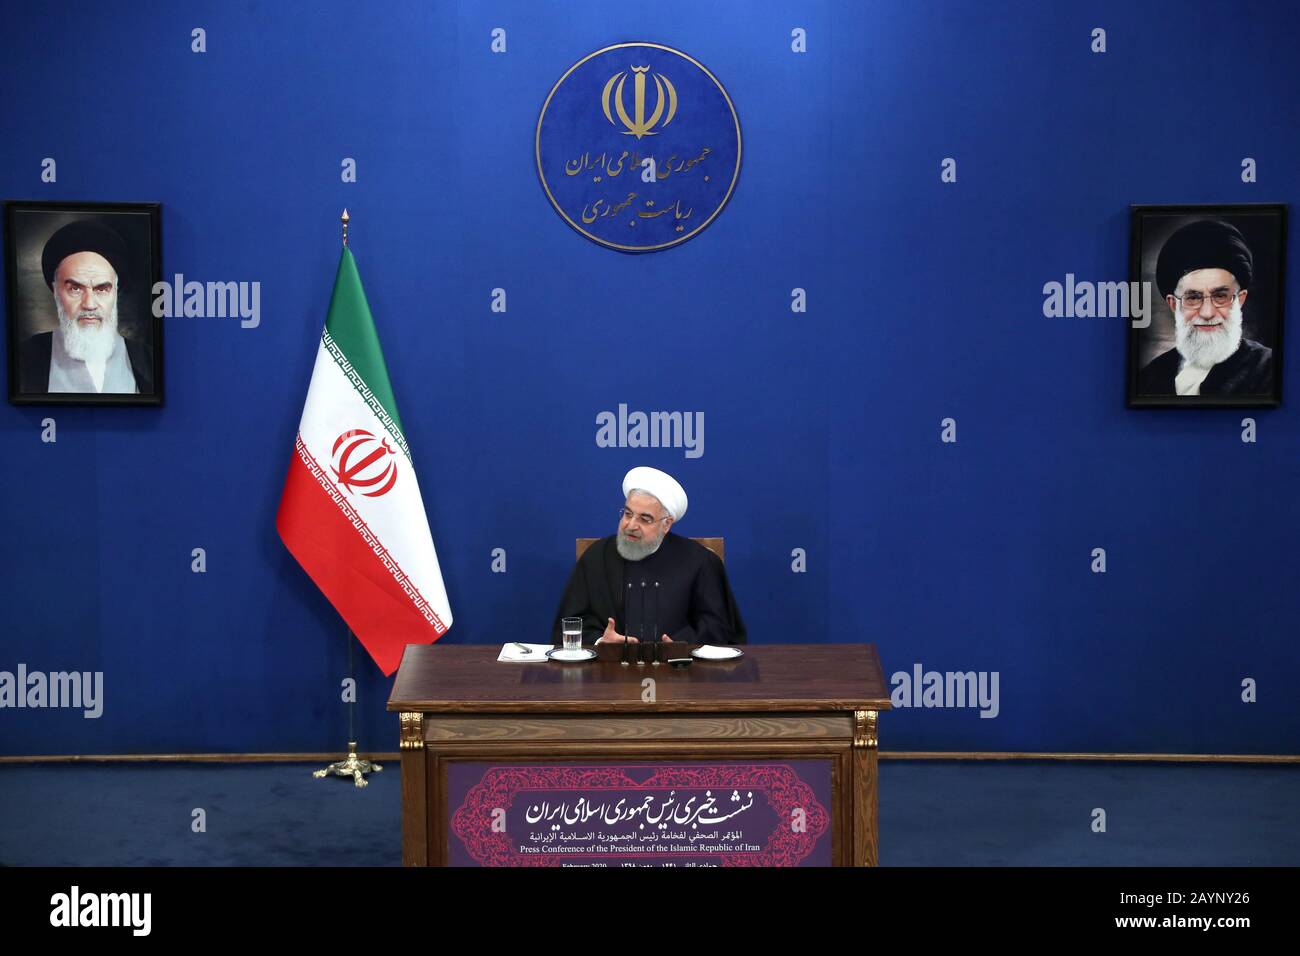 Téhéran, Iran. 16 février 2020. Une photo de la présidence iranienne montre le président iranien HASSAN ROUHANI lors d'une conférence de presse avec des médias nationaux et internationaux. Il a parlé d'importantes questions intérieures, ainsi que des positions de la République islamique d'Iran sur les questions régionales et internationales. Rouhani a déclaré : Téhéran ne négociera pas avec les États-Unis sous pression, Washington doit d'abord lever les sanctions et rétablir son engagement en faveur du Plan d'action Global conjoint. Crédit : Présidence Iranienne/Zuma Wire/Alay Live News Banque D'Images